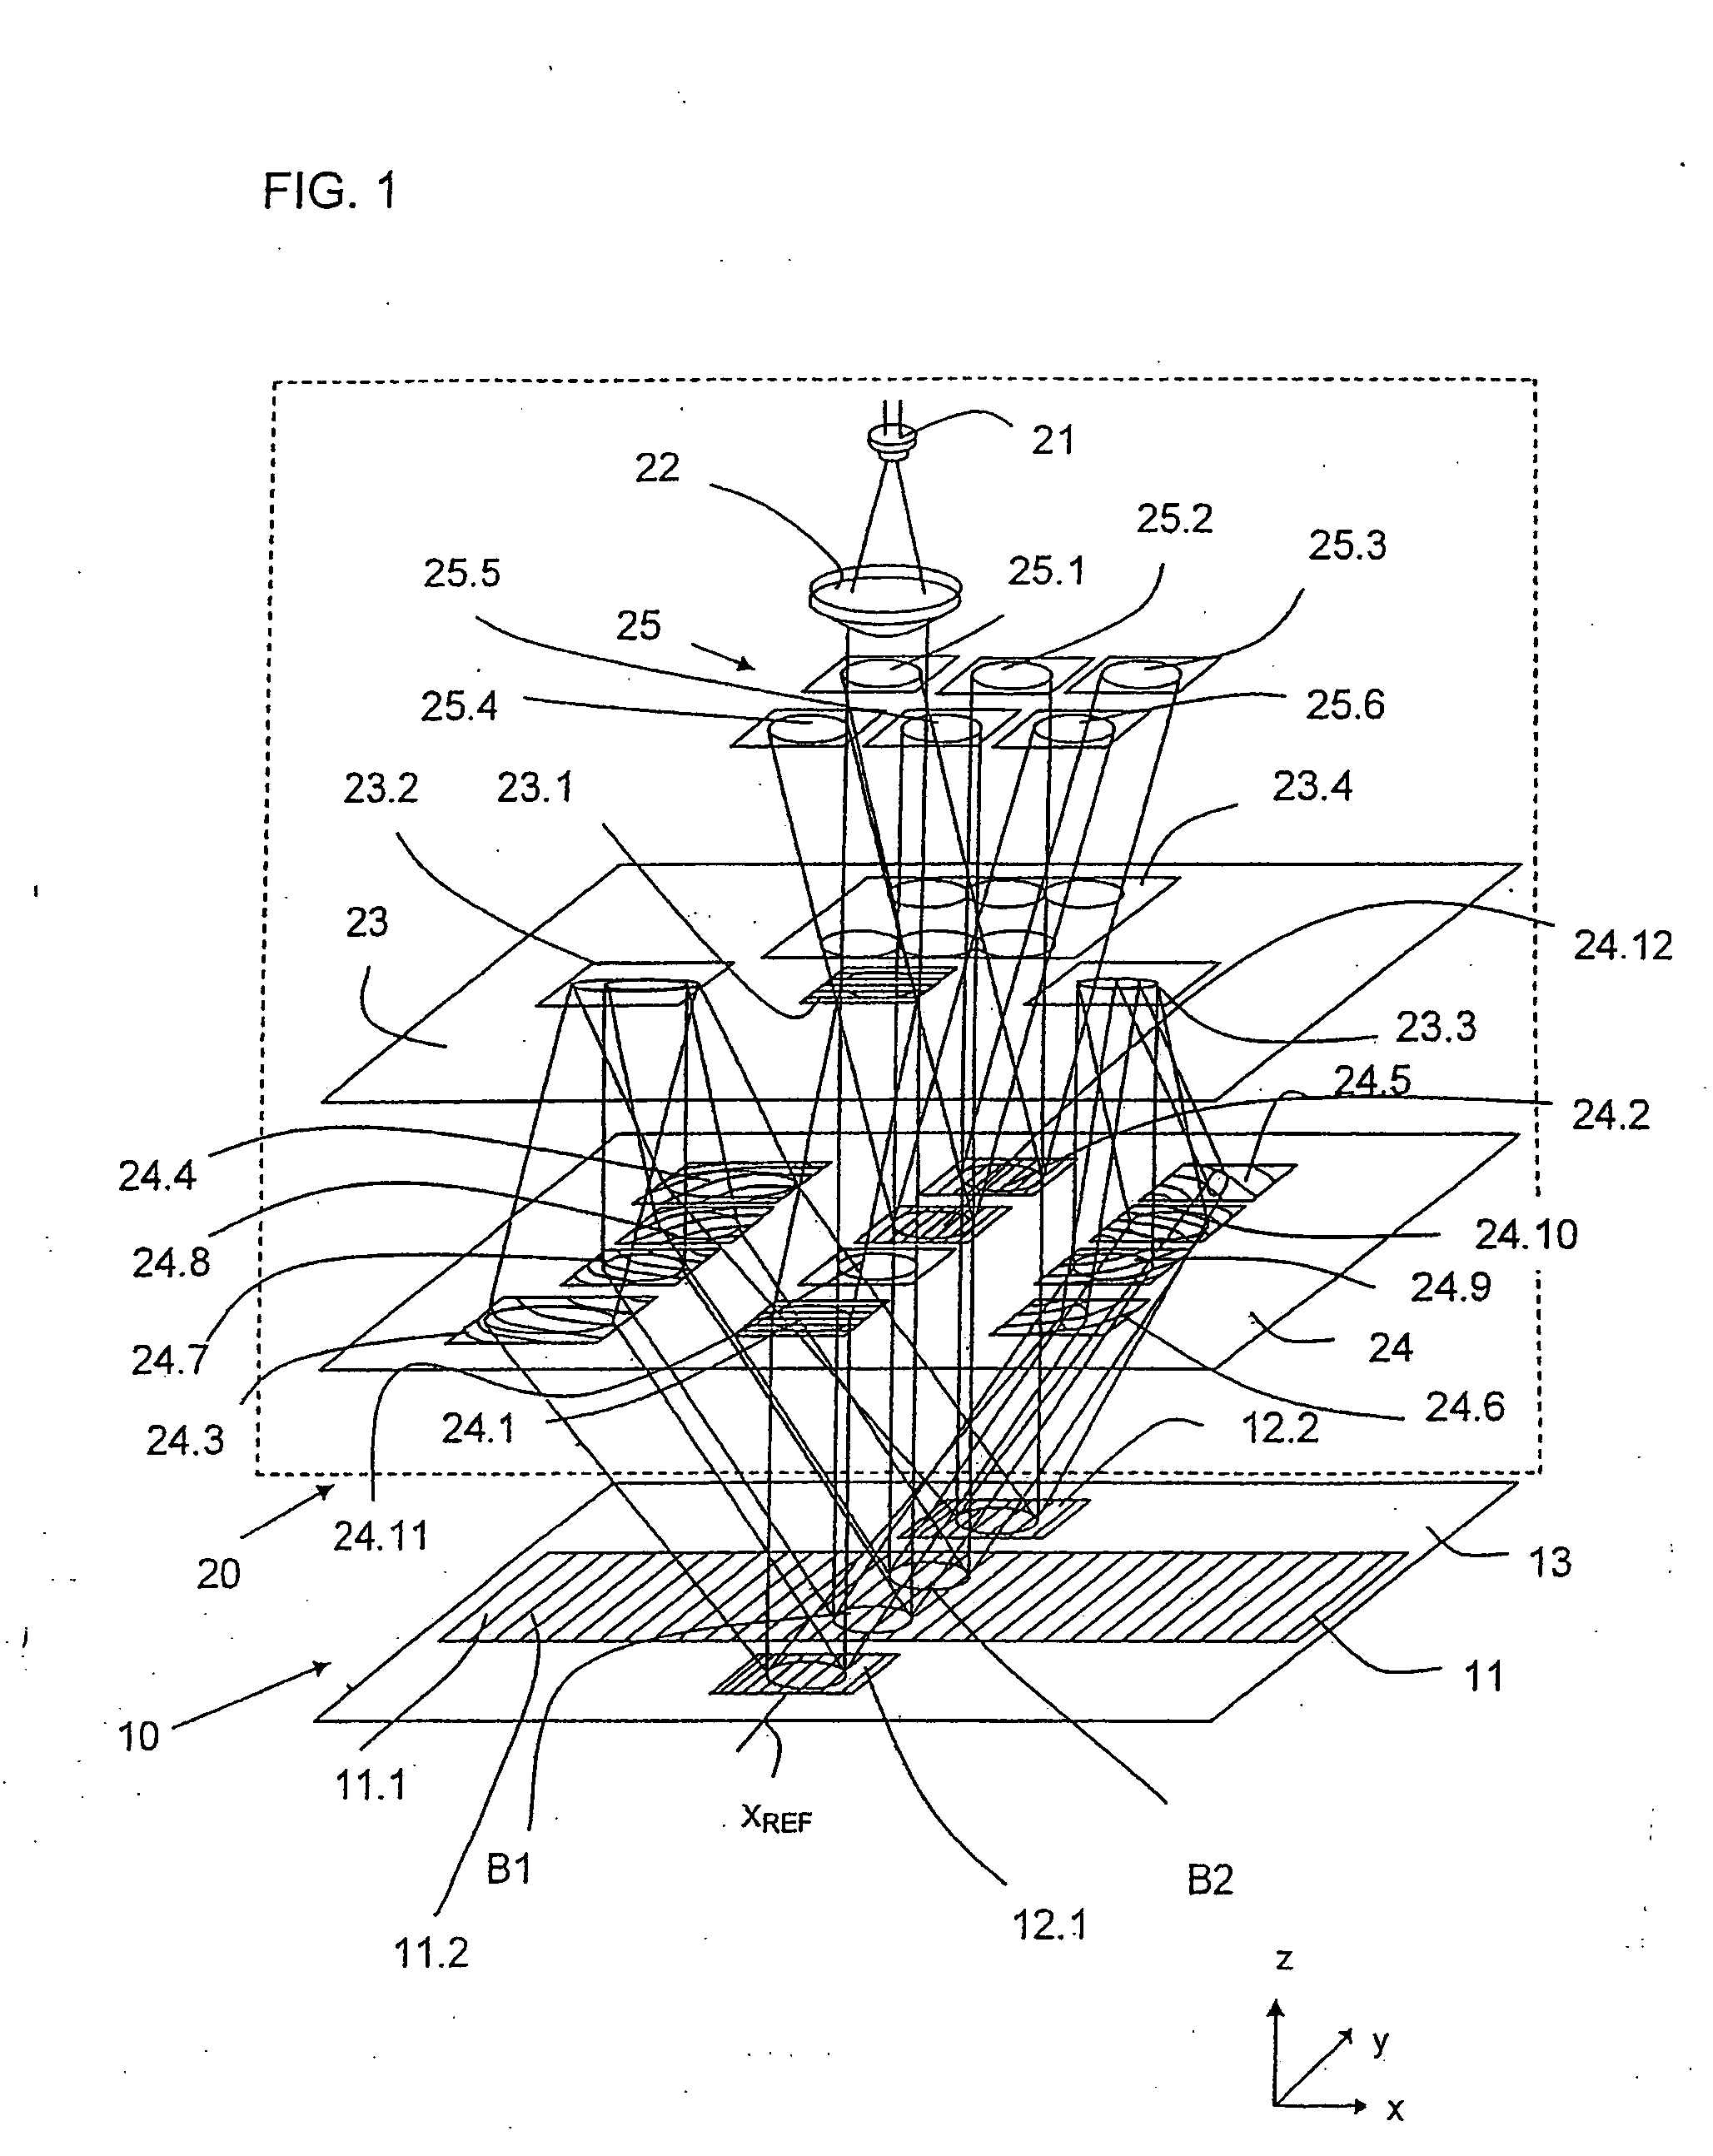 Optical position measuring arrangement